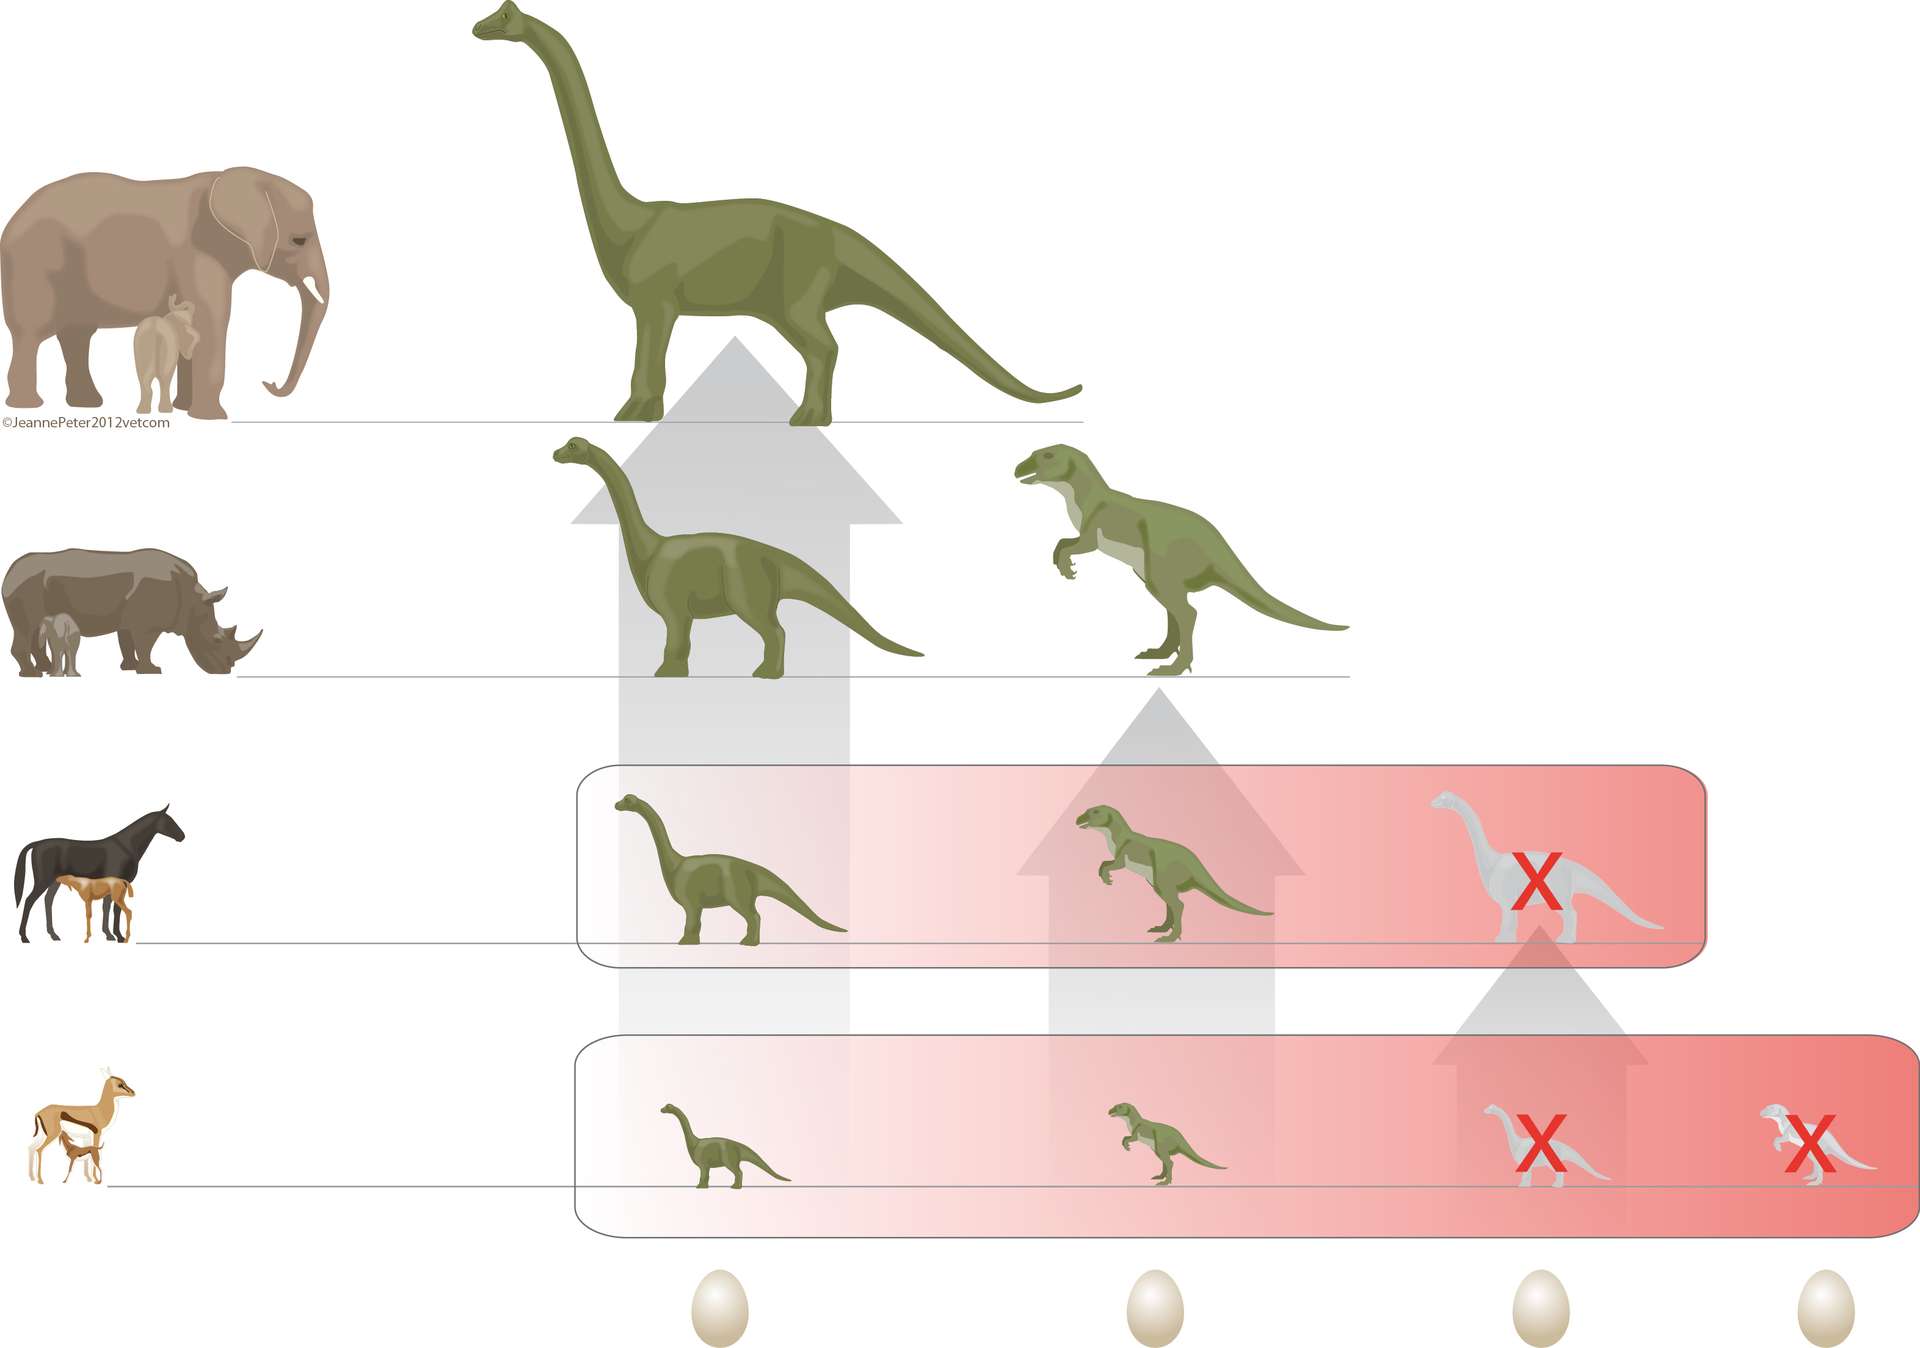 La durée d'incubation des oeufs aurait contribué à la disparition des  dinosaures